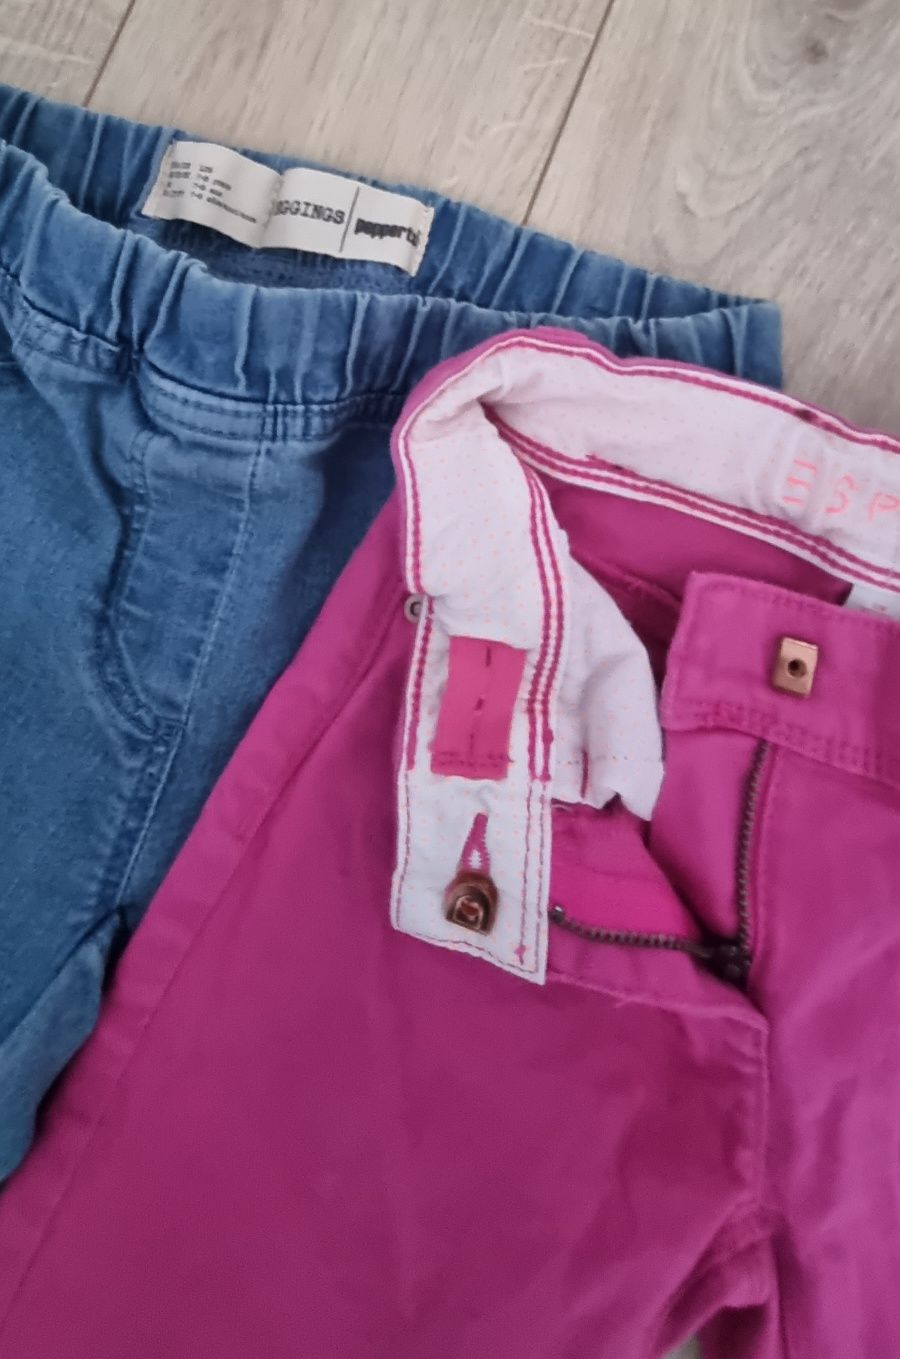 Spodnie Jeansy Esprit Pepperts 7 8 L 122 128 elastyczne różowe  dziewc